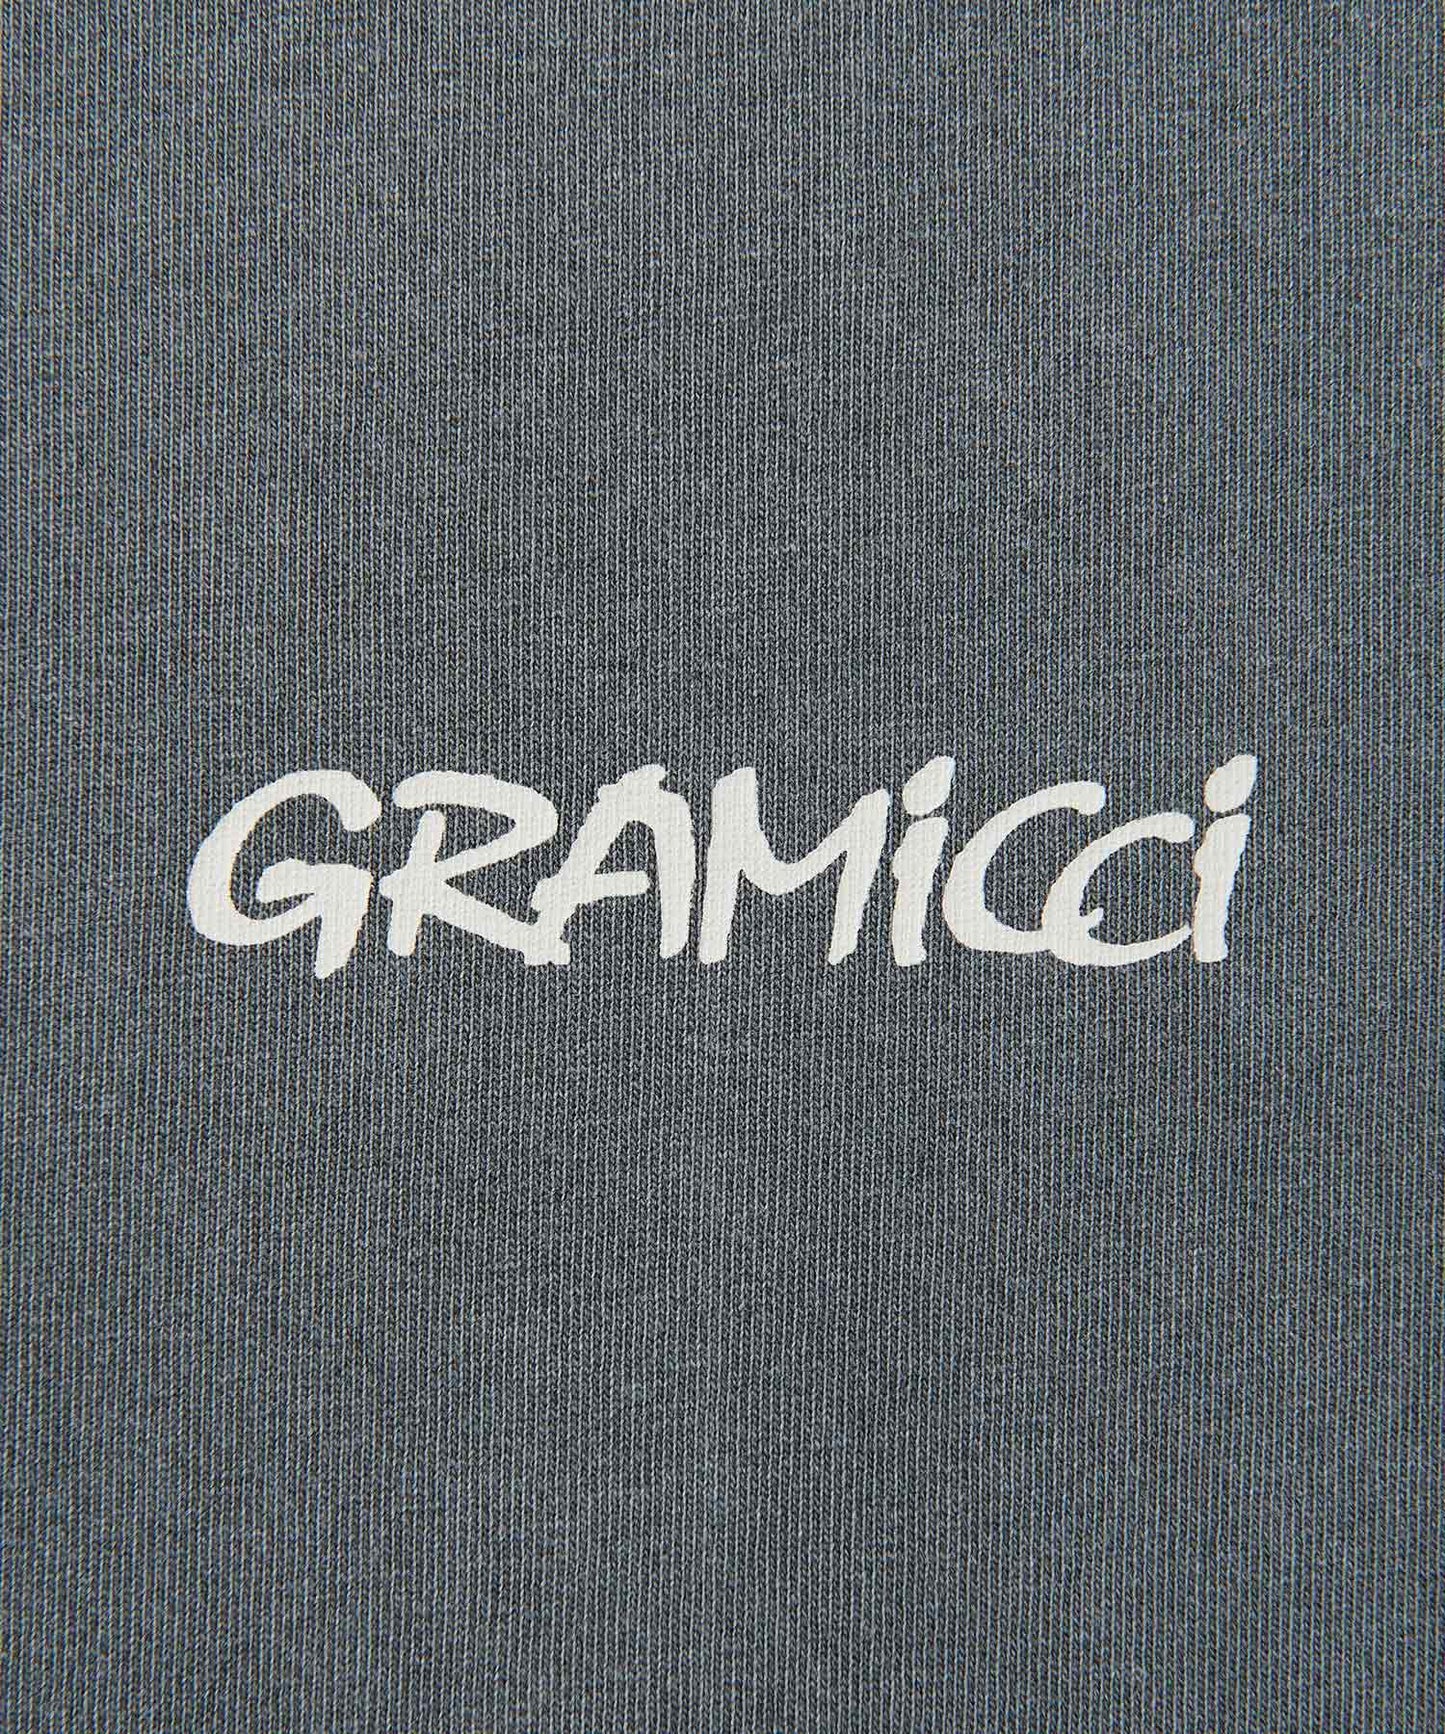 [GRAMICCI グラミチ] G-PANT TEE | G-パンツTシャツ